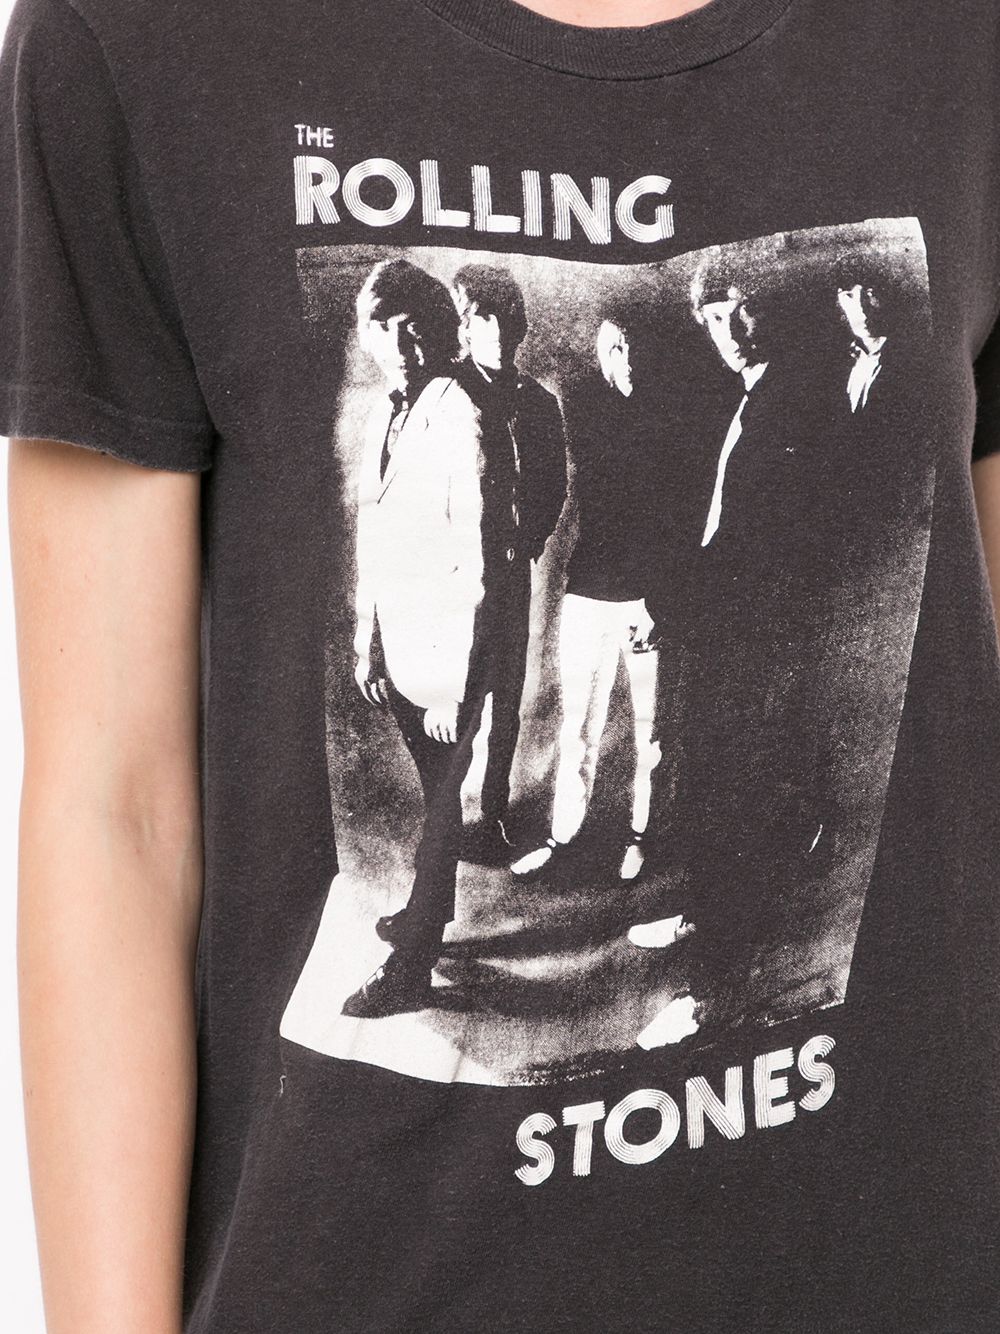 фото Fake alpha vintage футболка rolling stones 1980-х годов